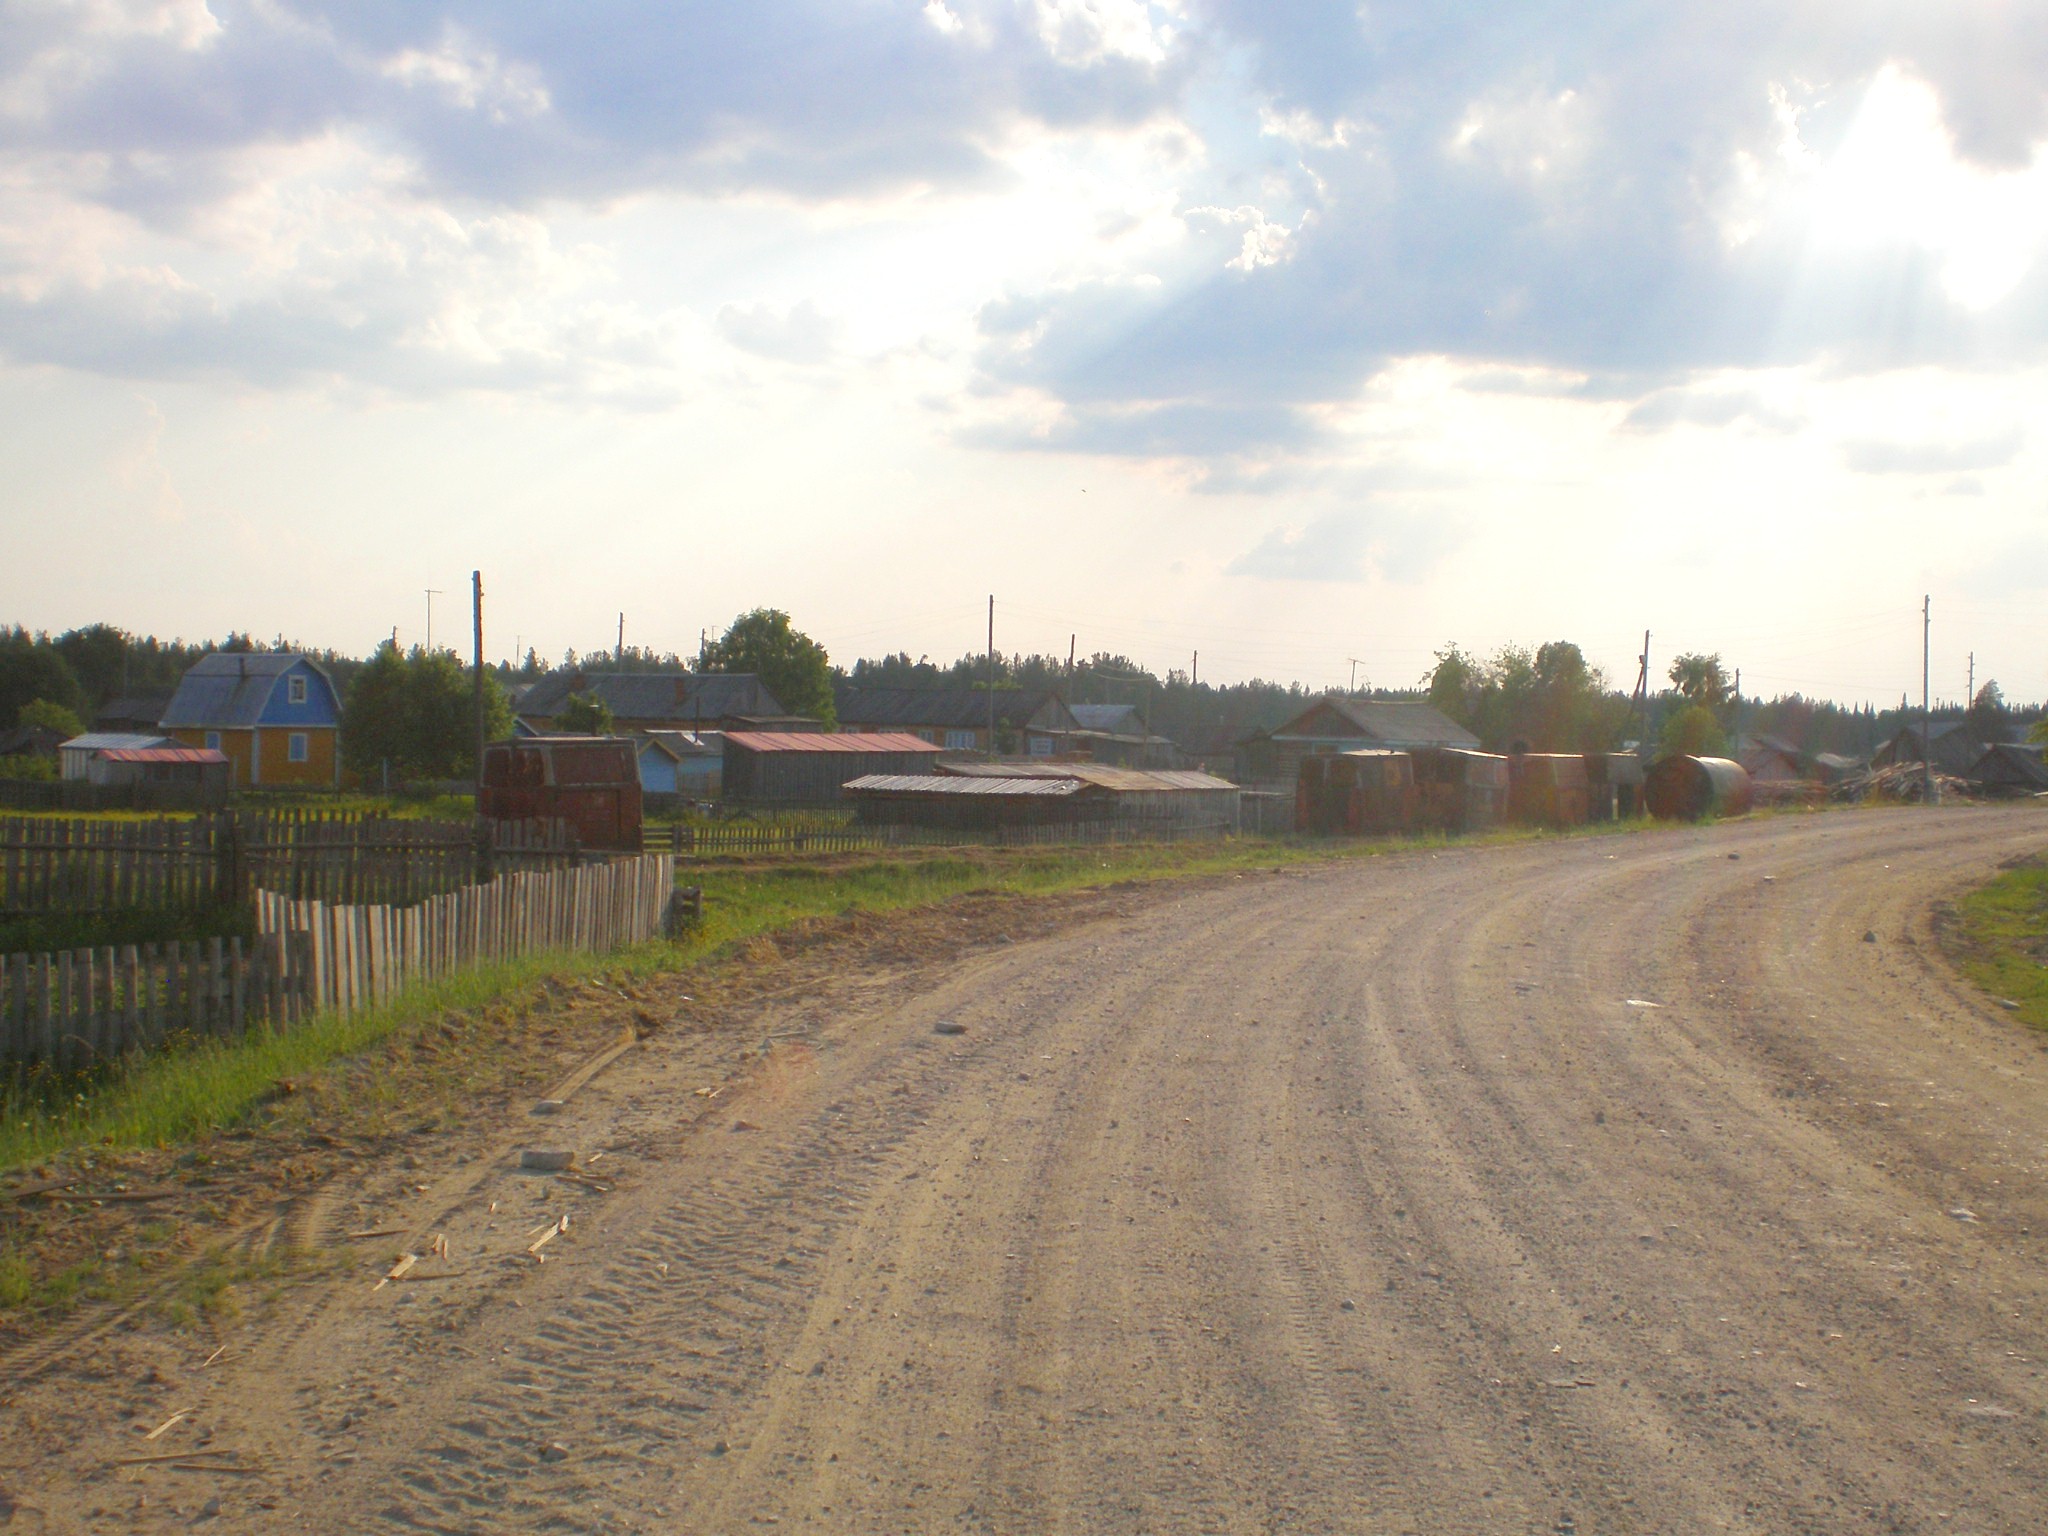 Смолянская узкоколейная железная дорога  —  фотографии, сделанные в 2008 году (часть 1)